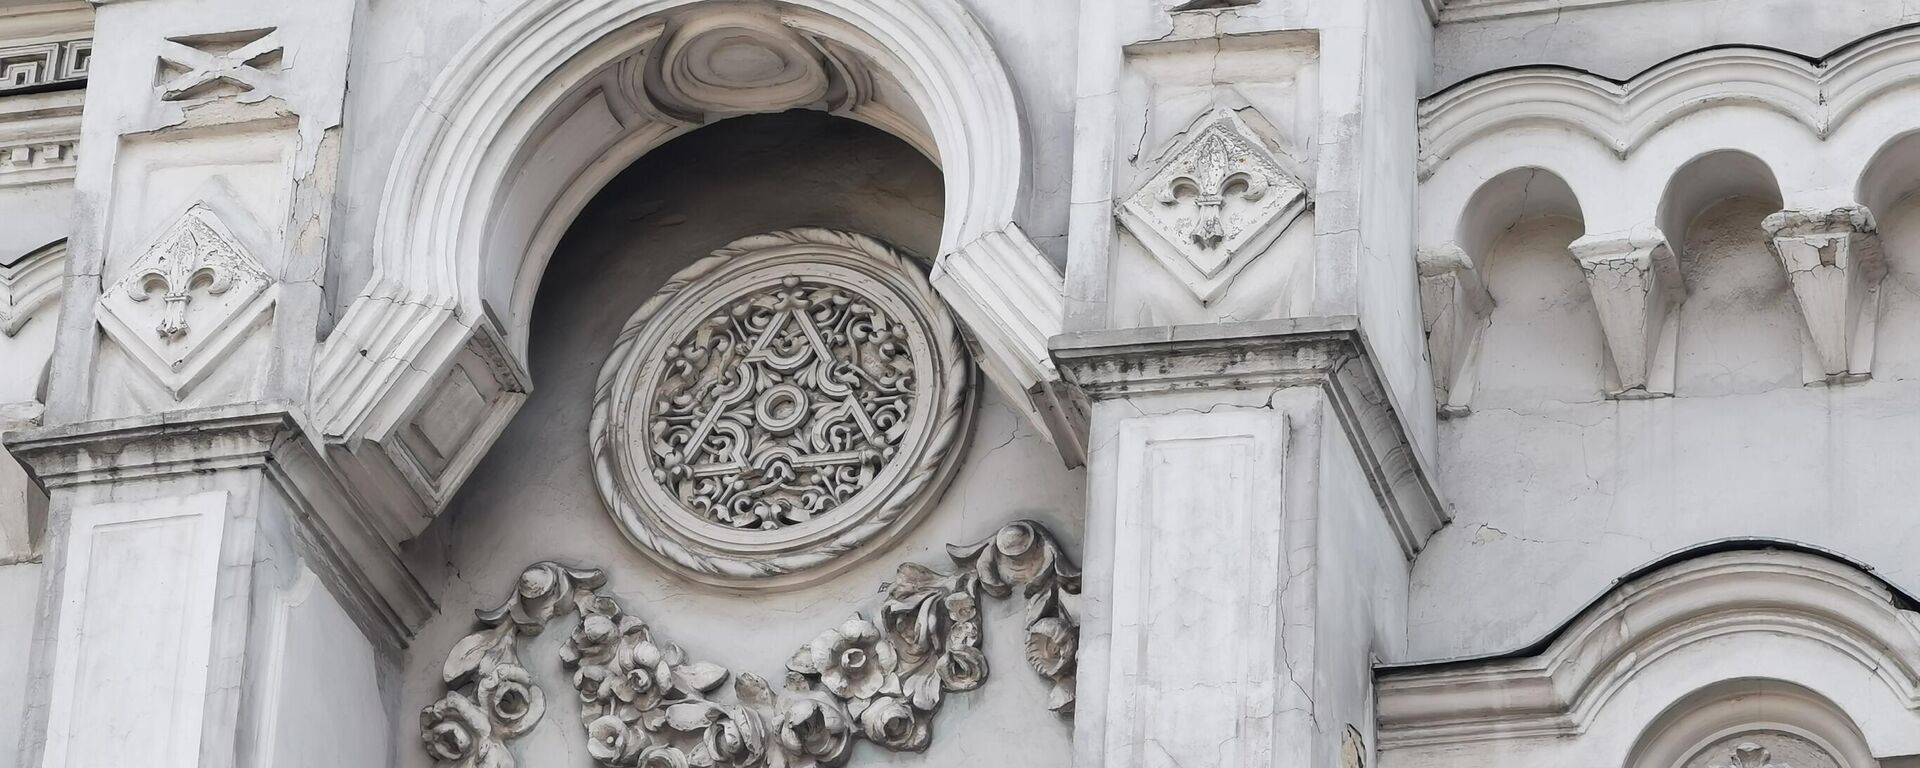 Элементы декора здания в Кишиневе на ул.Армянской - Sputnik Молдова, 1920, 02.10.2021